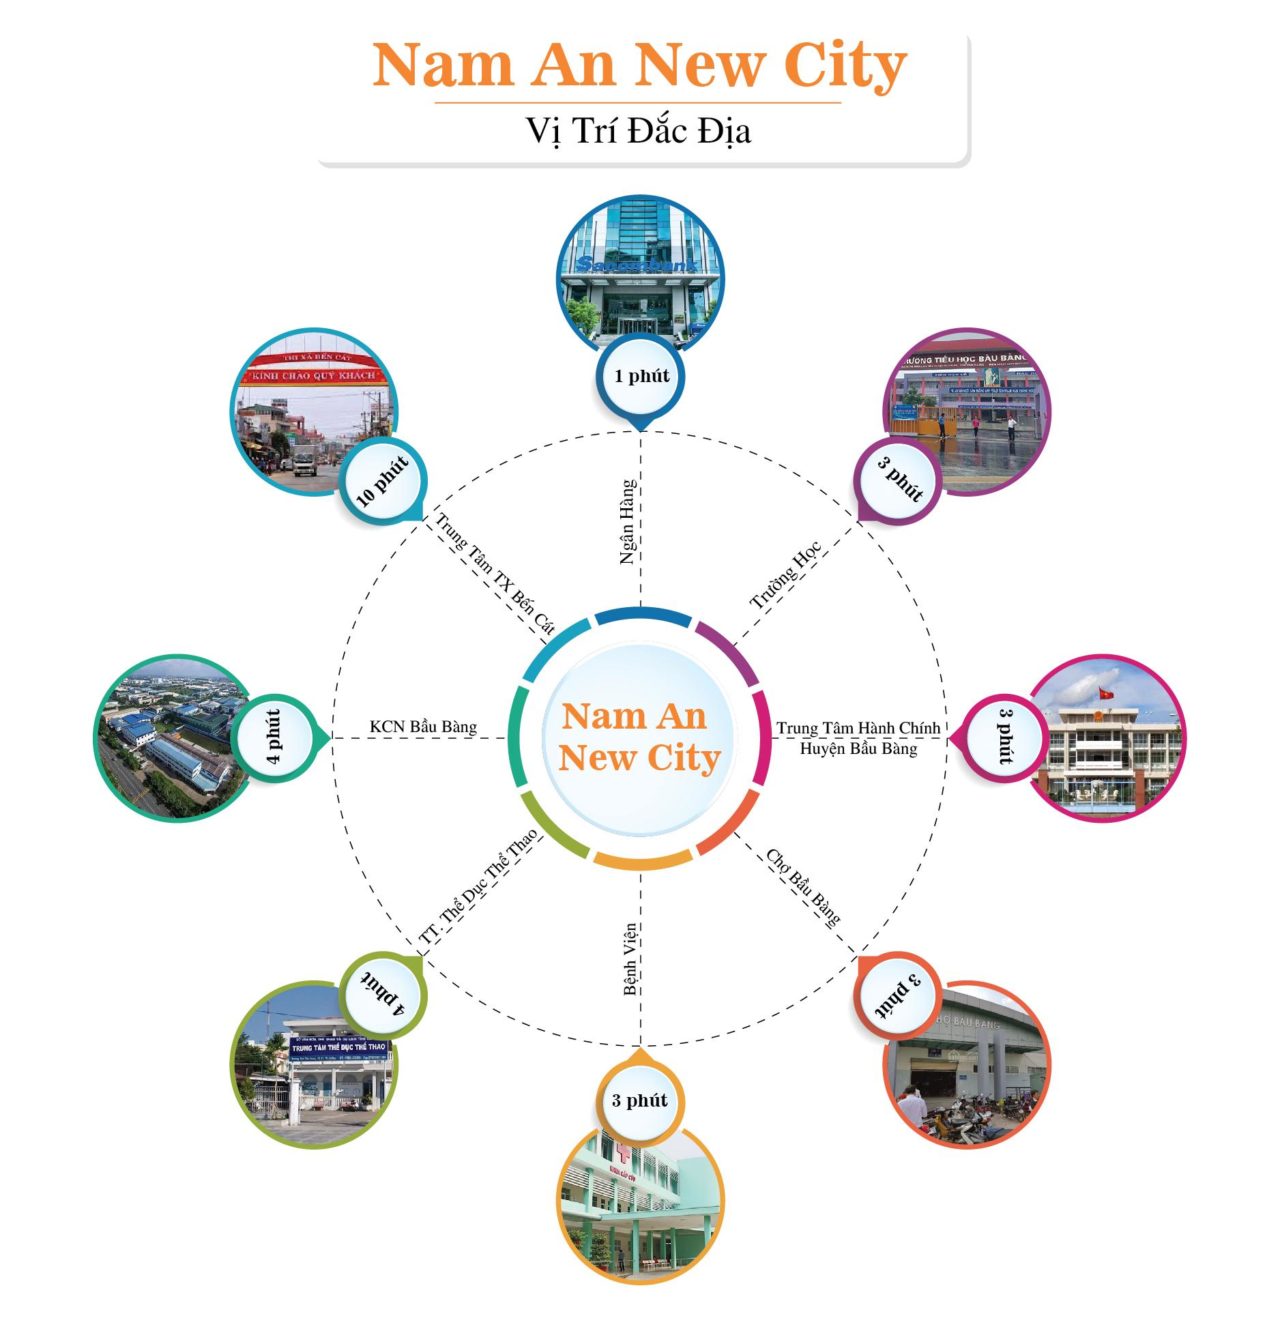 Hình ảnh về Nam An New City